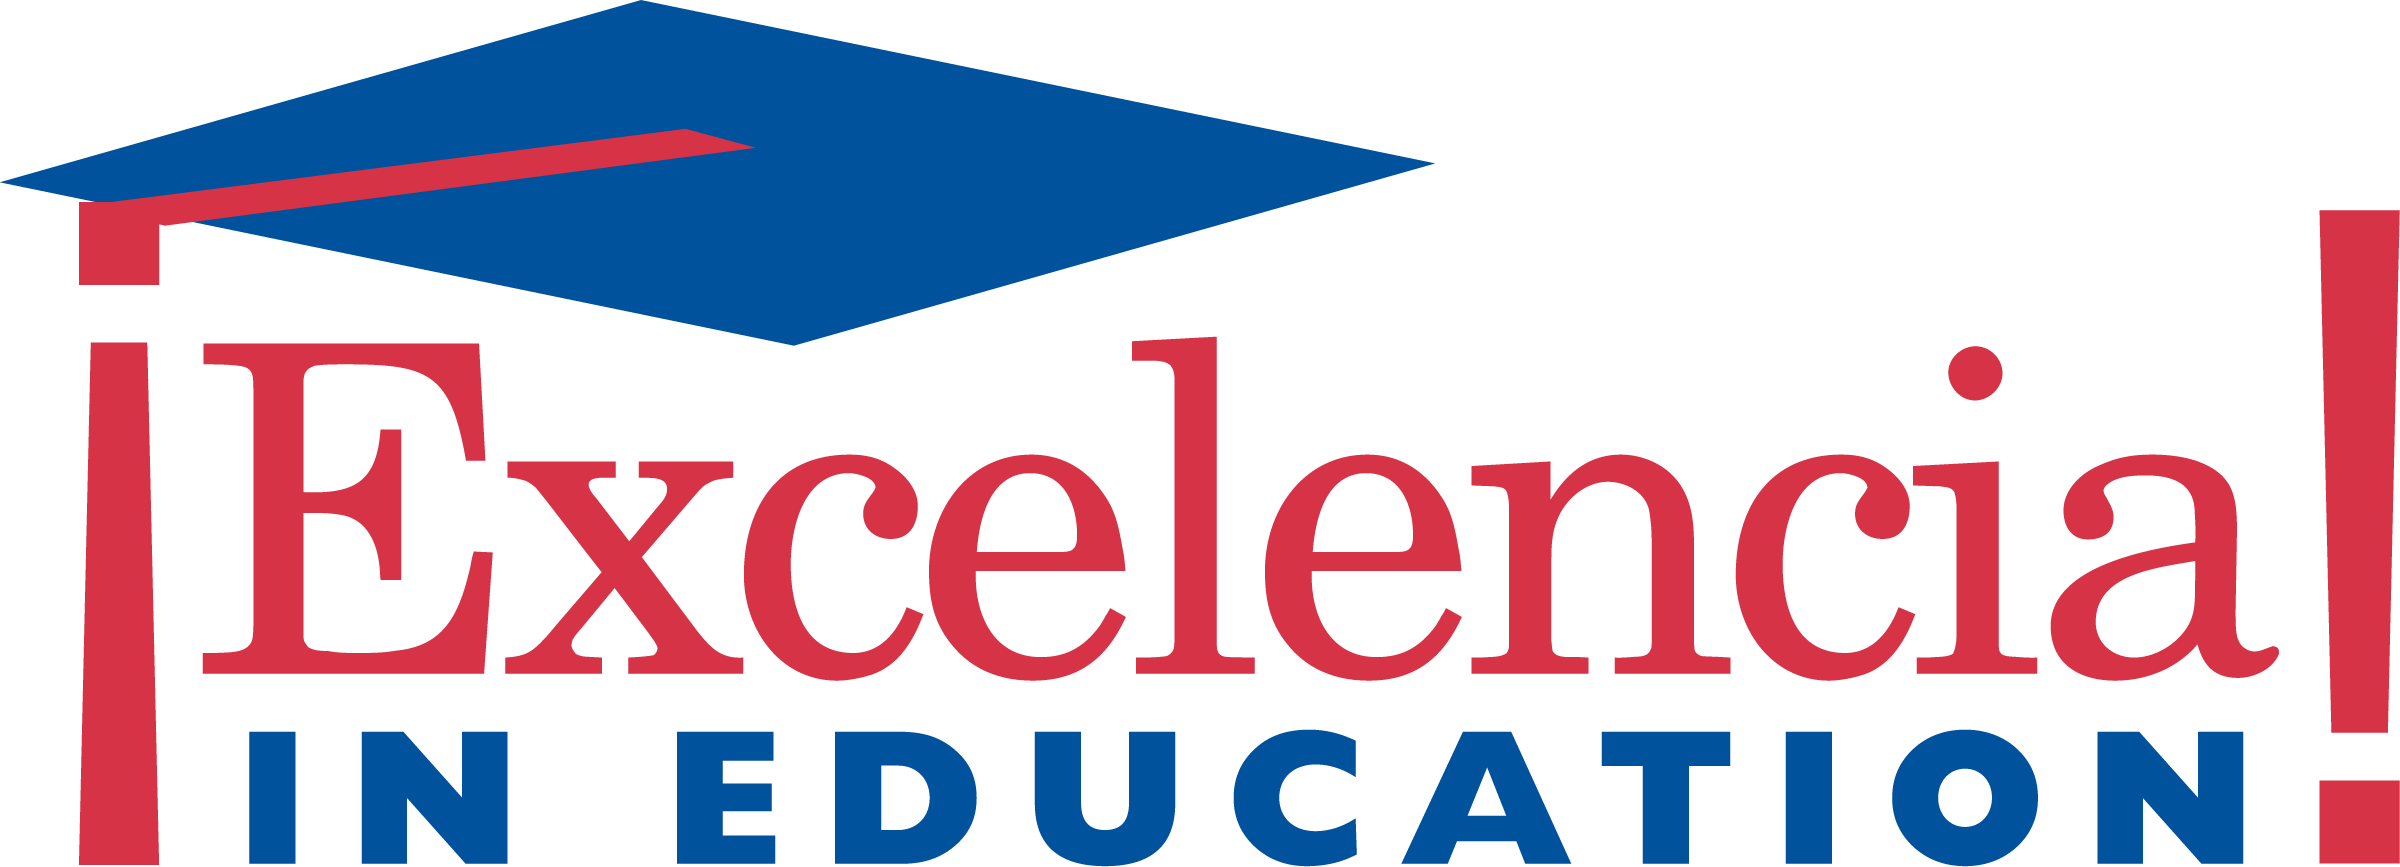 Excelencia in Education logo